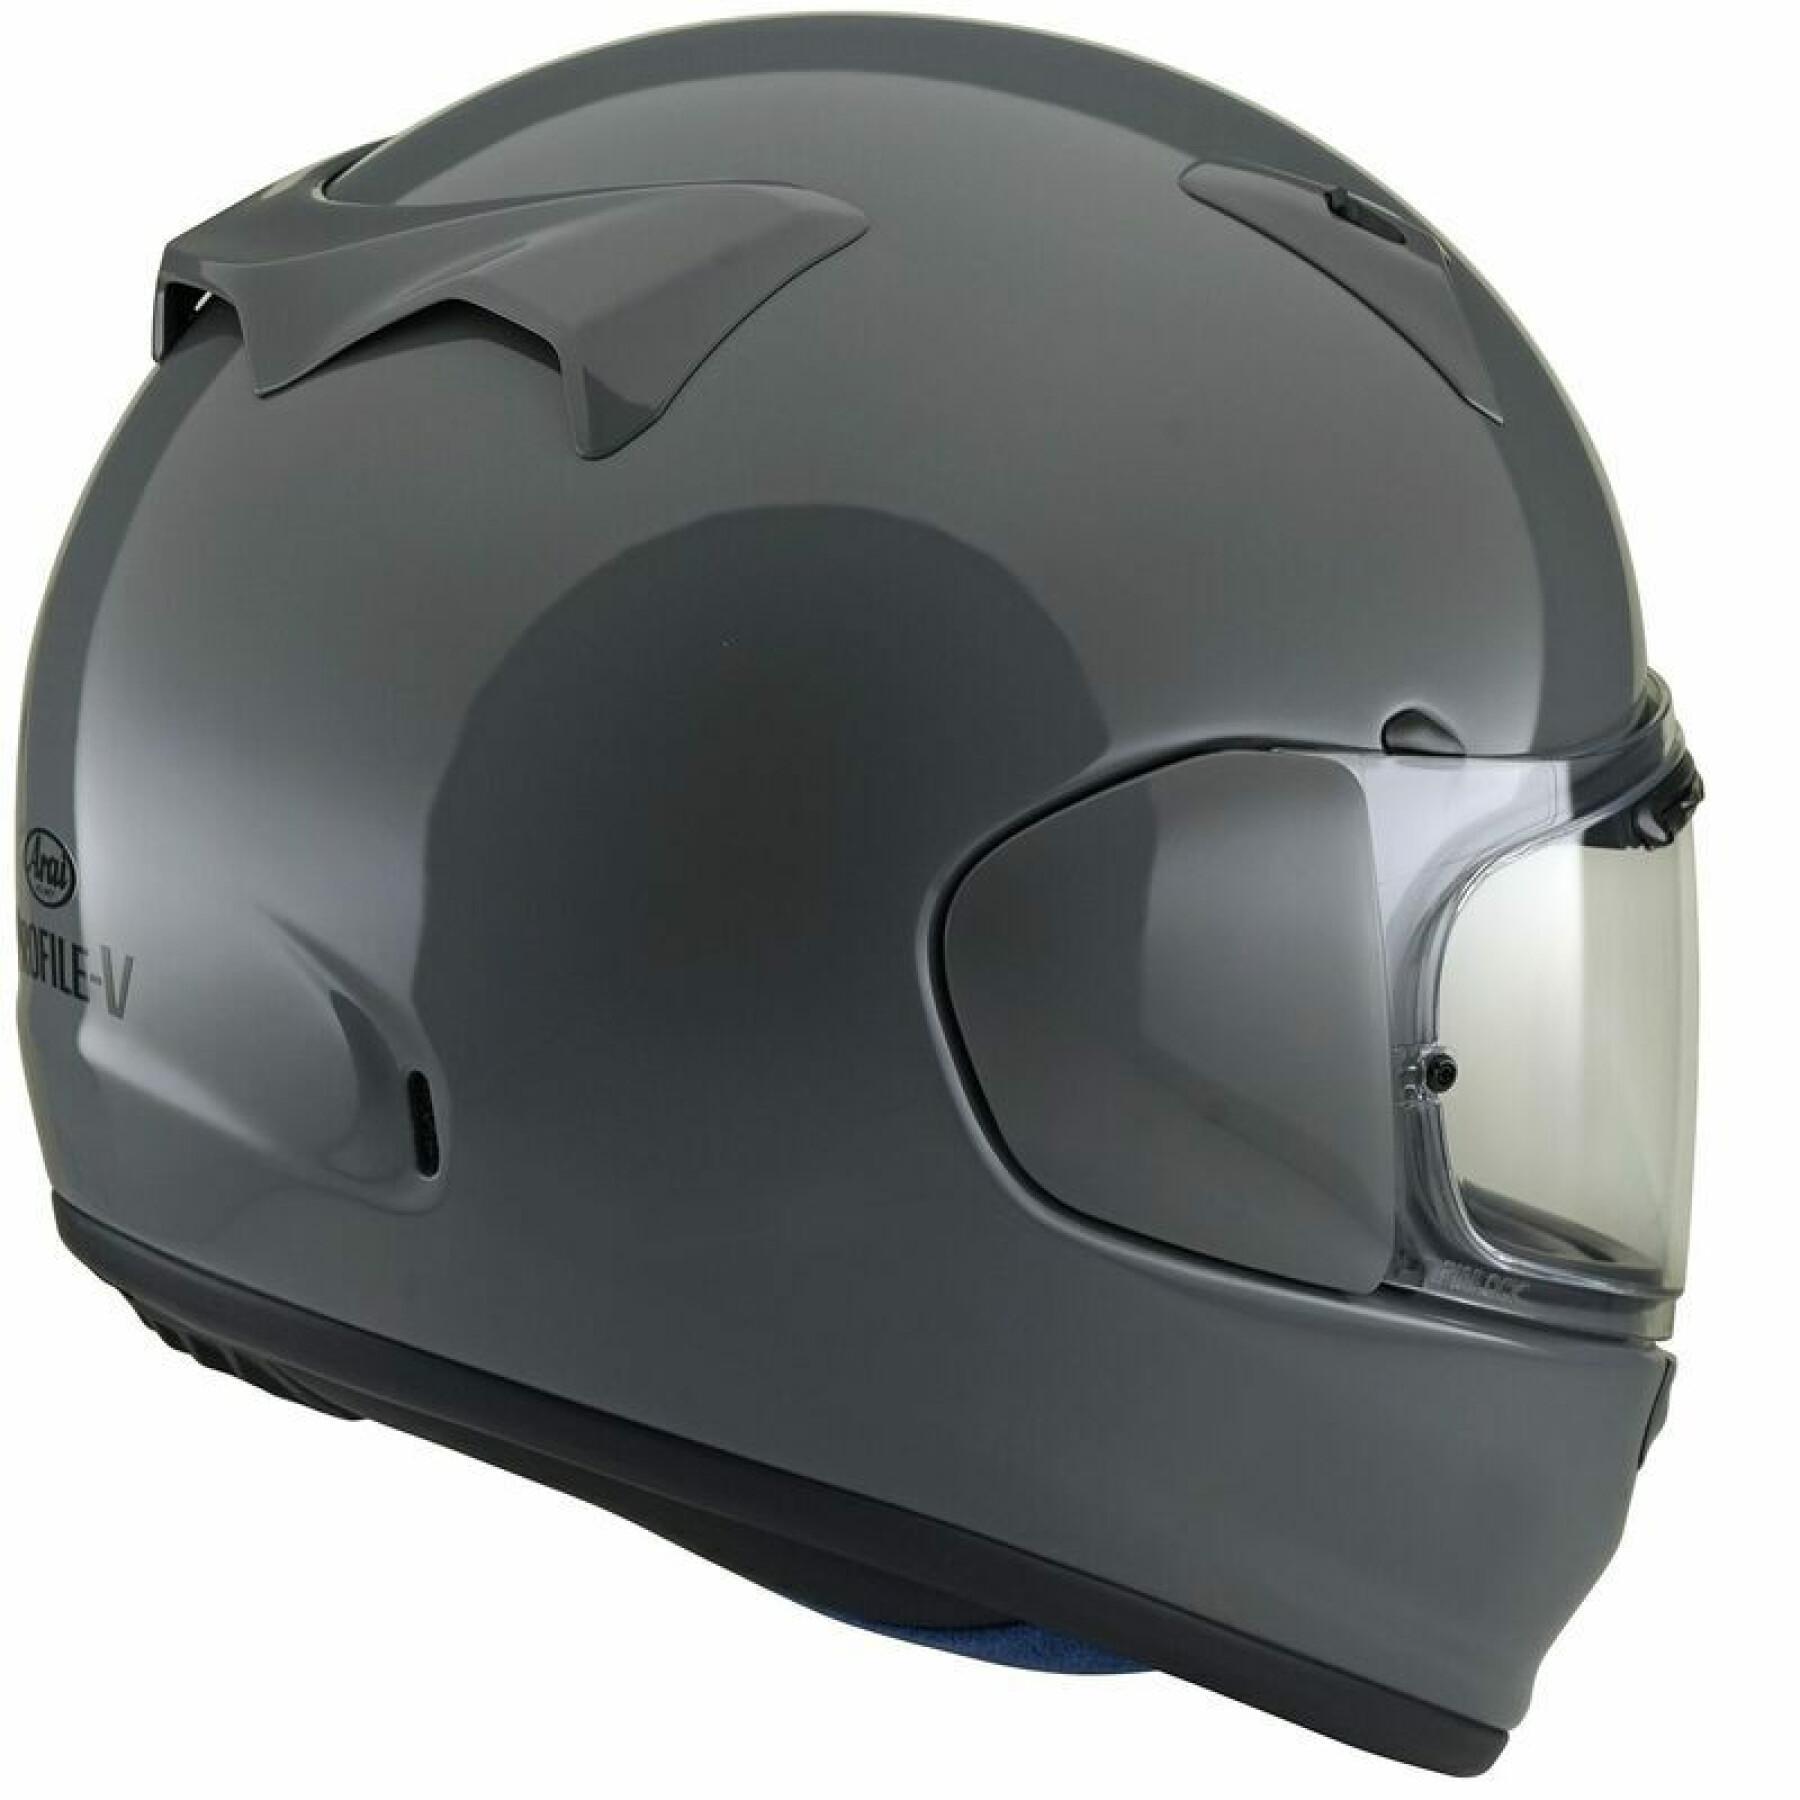 Full face motorcycle helmet Arai Profile-V Modern